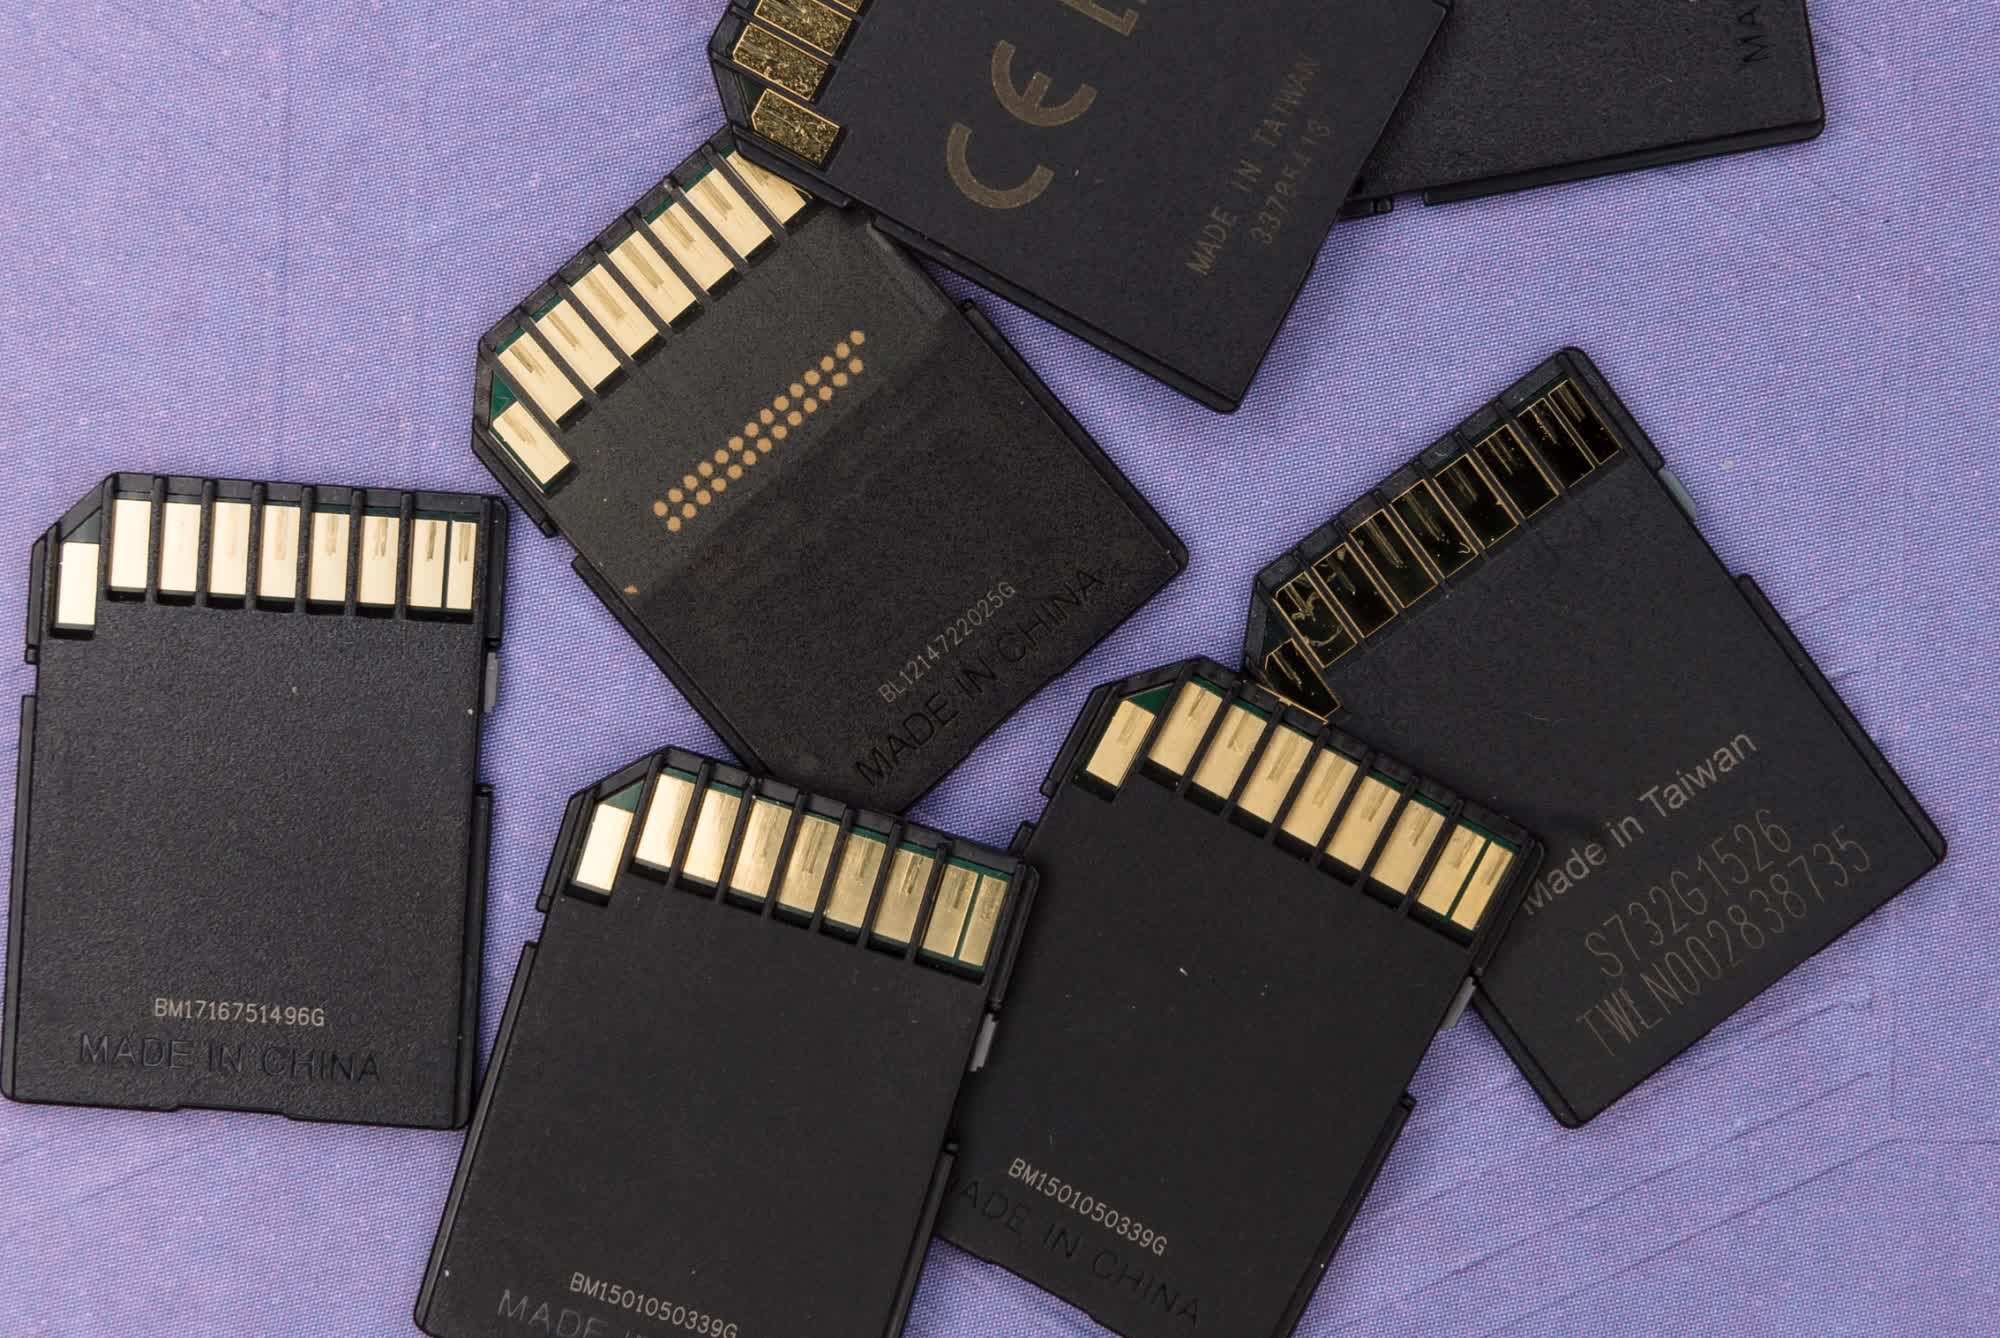 La carte microSD de 1 To de SanDisk ne coûte que 90 $ dans la